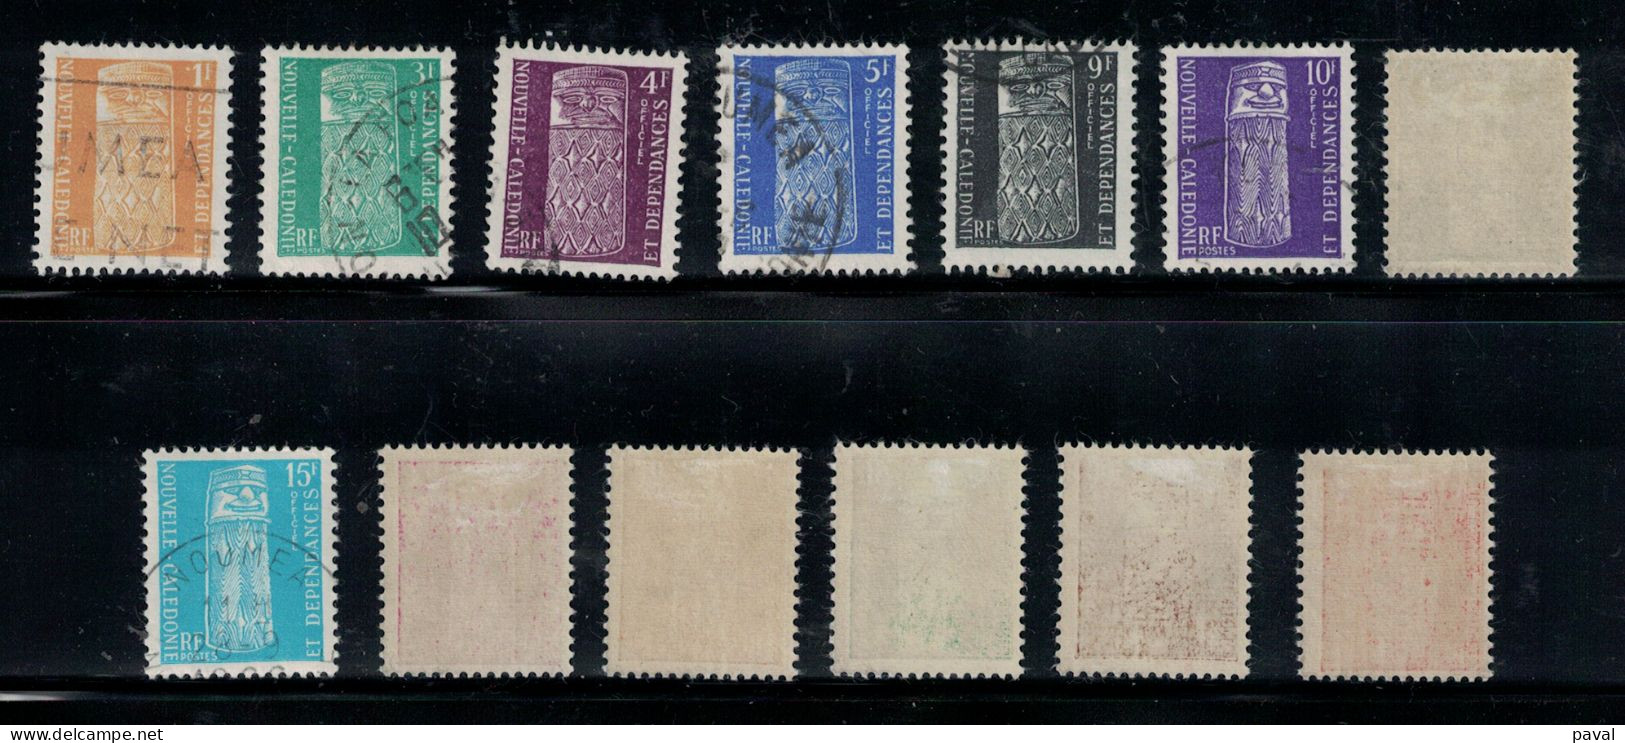 SERVICES SERIE COMPLETE N°1 à 13, NOUVELLE CALEDONIE, COTE 55,00€, 1959 - Dienstzegels